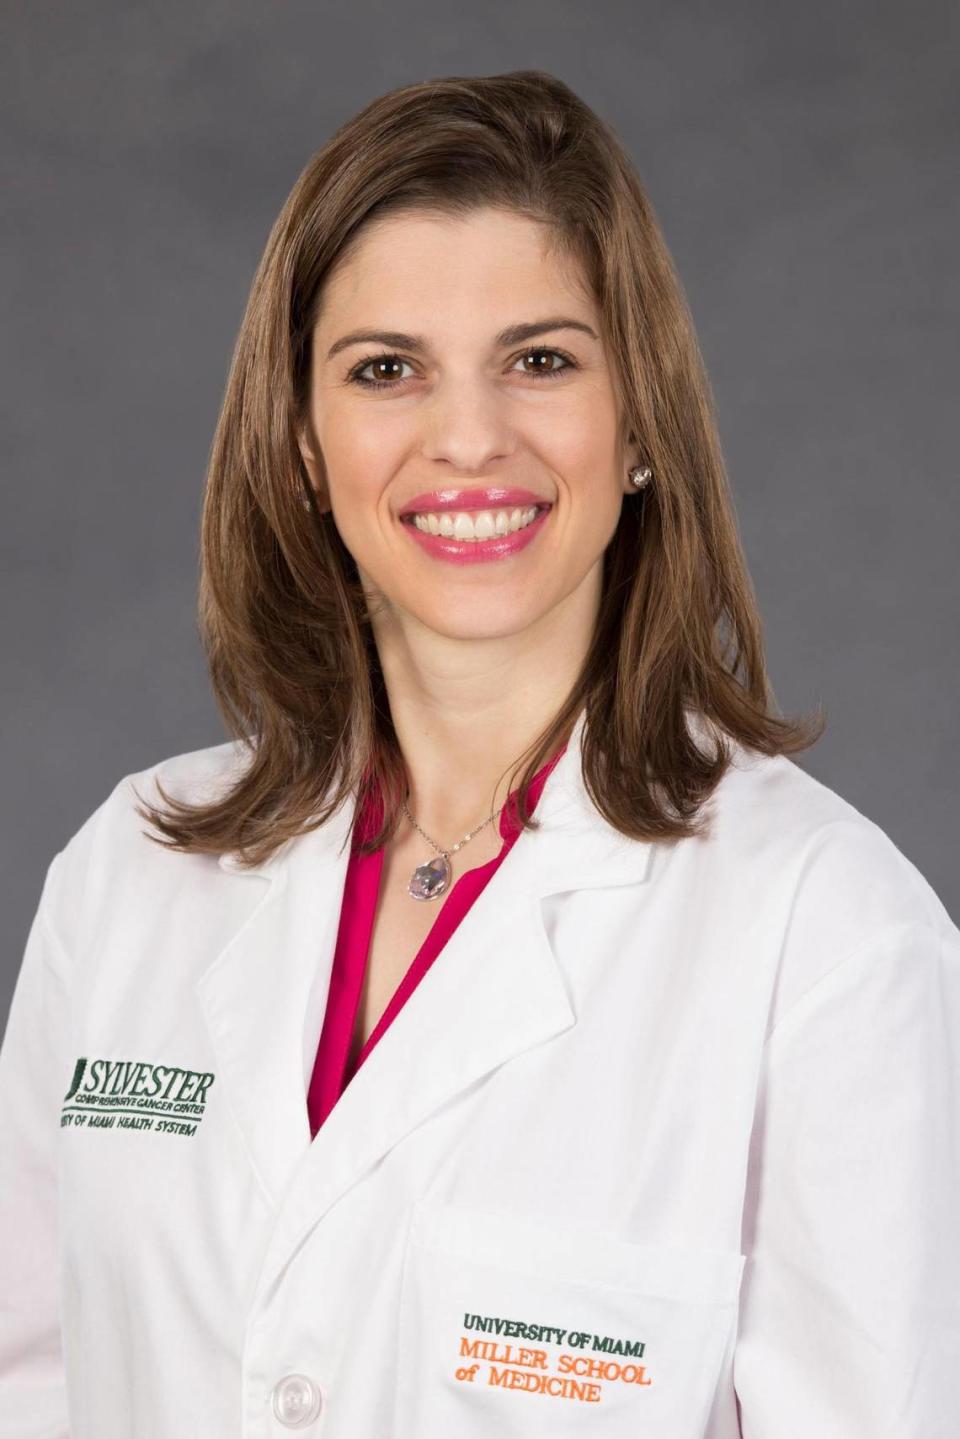 Sara Mijares St. George, profesora del Departamento de Ciencias de Salud Pública de la Escuela de Medicina Miller en la Universidad de Miami, fue quien creó la aplicación.